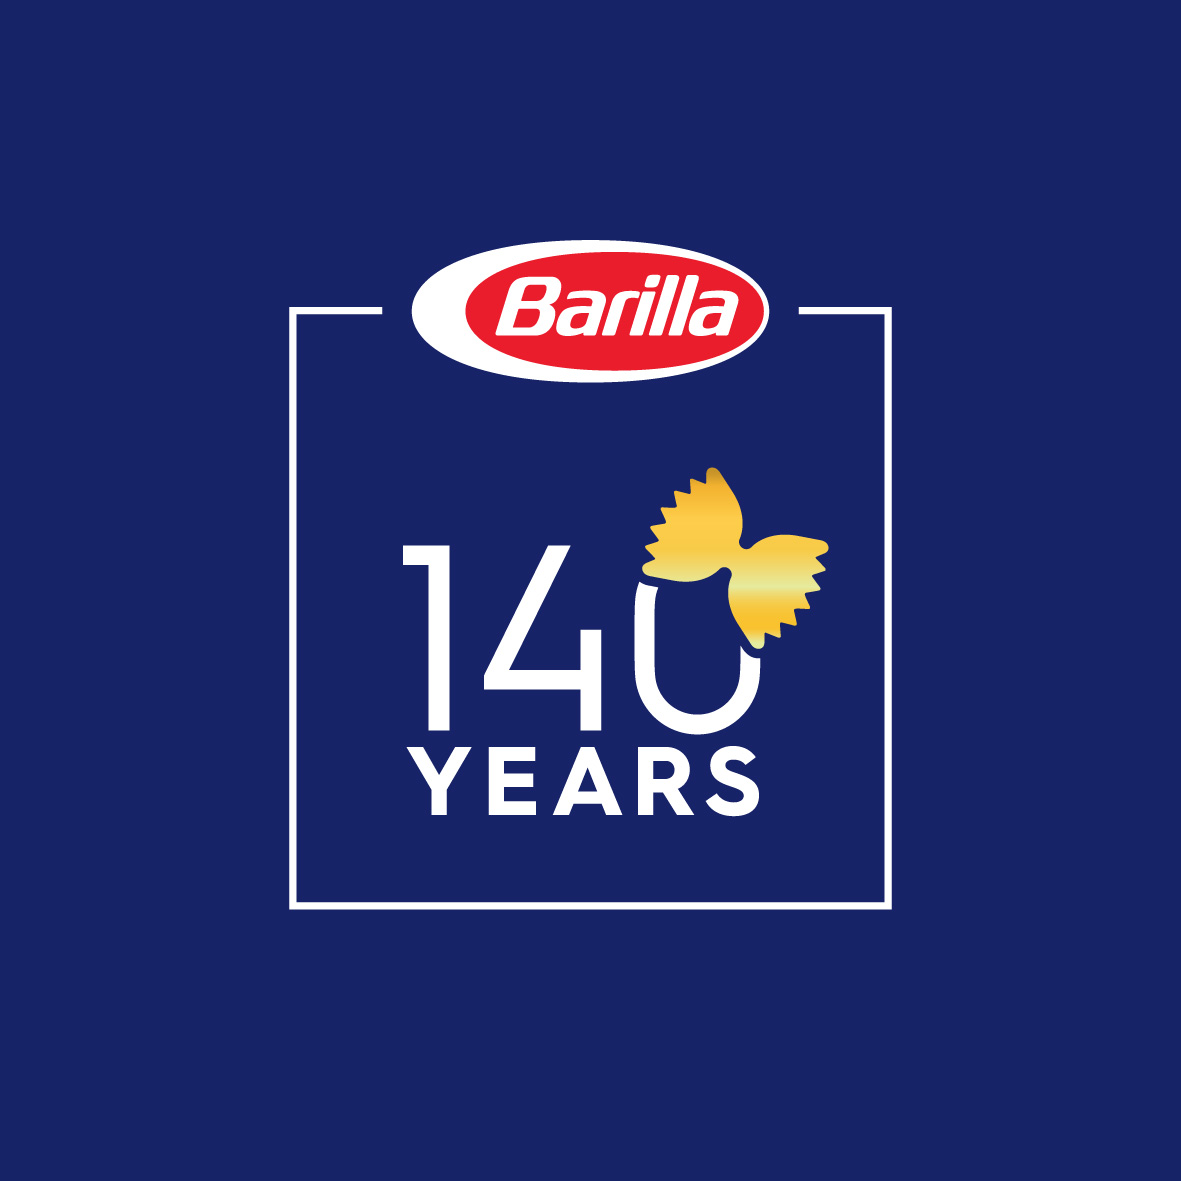 2017 - Il logo del 140° anniversario di Barilla